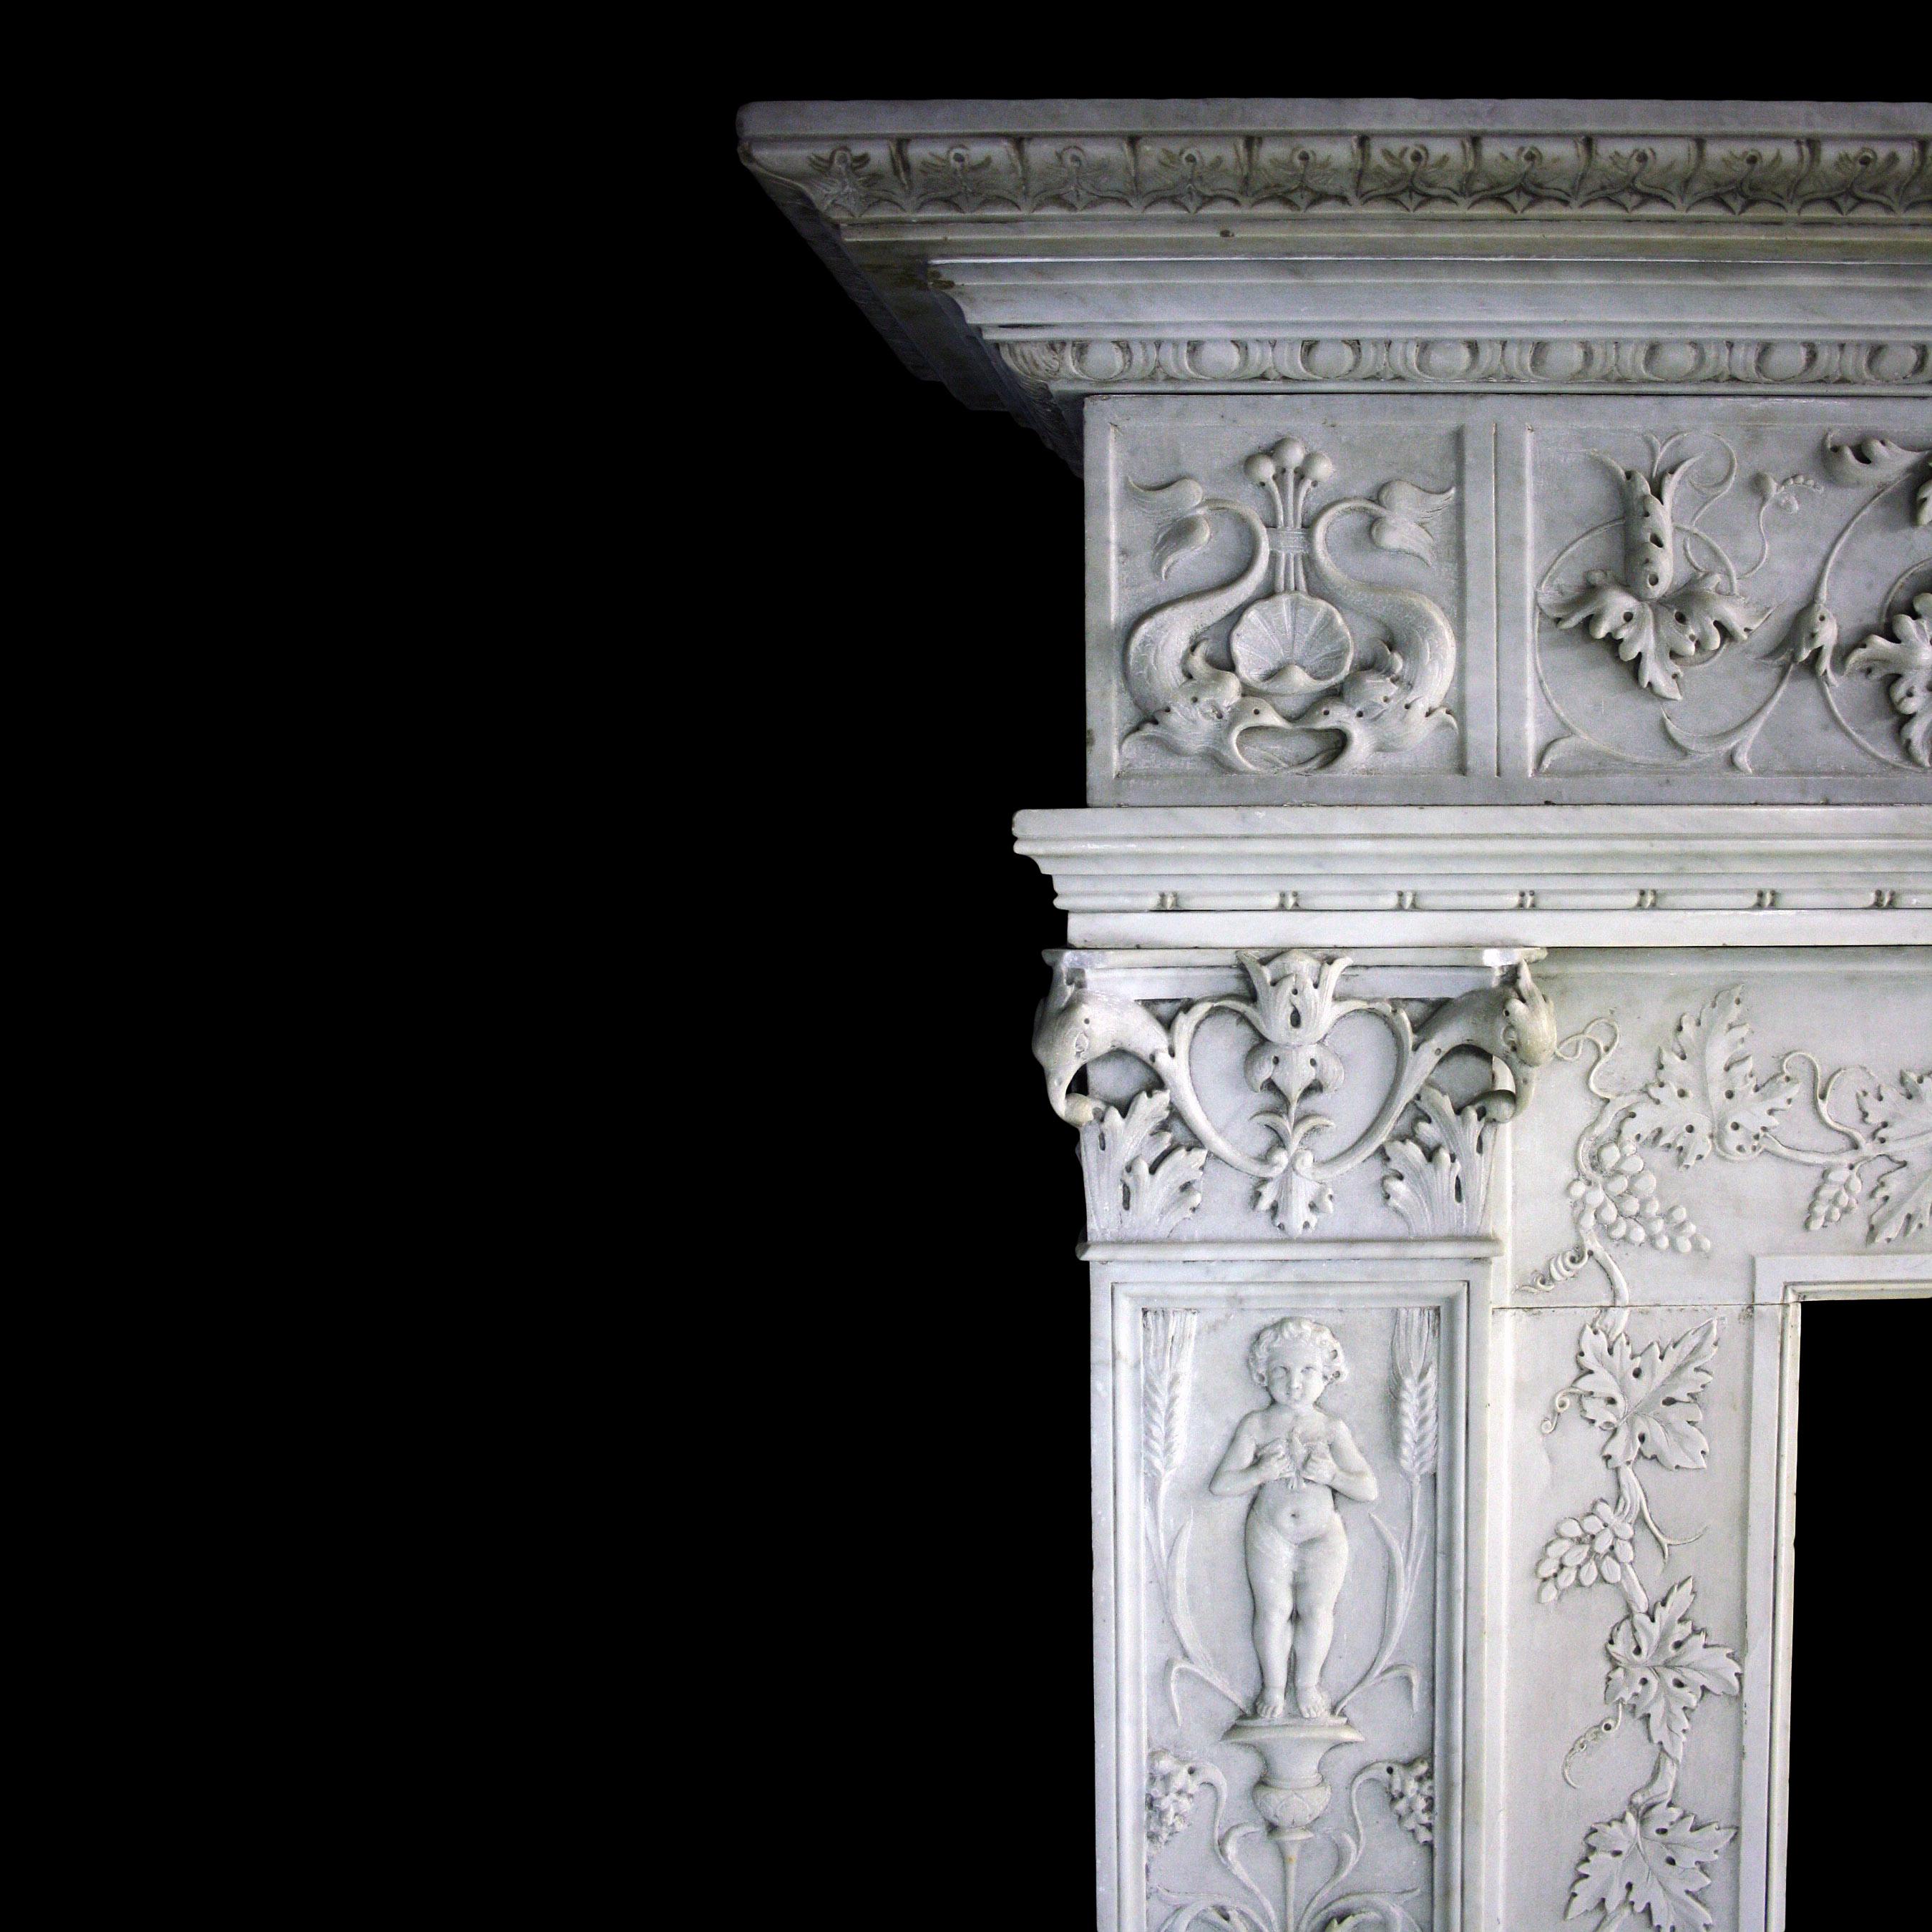 Ein Kamin aus geschnitztem Carrara-Marmor aus dem 19. Jahrhundert im Stil der Renaissance. Es hat gestufte, profilierte Fußblöcke unter reich verzierten Pfosten mit korinthischen Kapitellen. Der Boden besteht aus verschlungenen Weinreben und